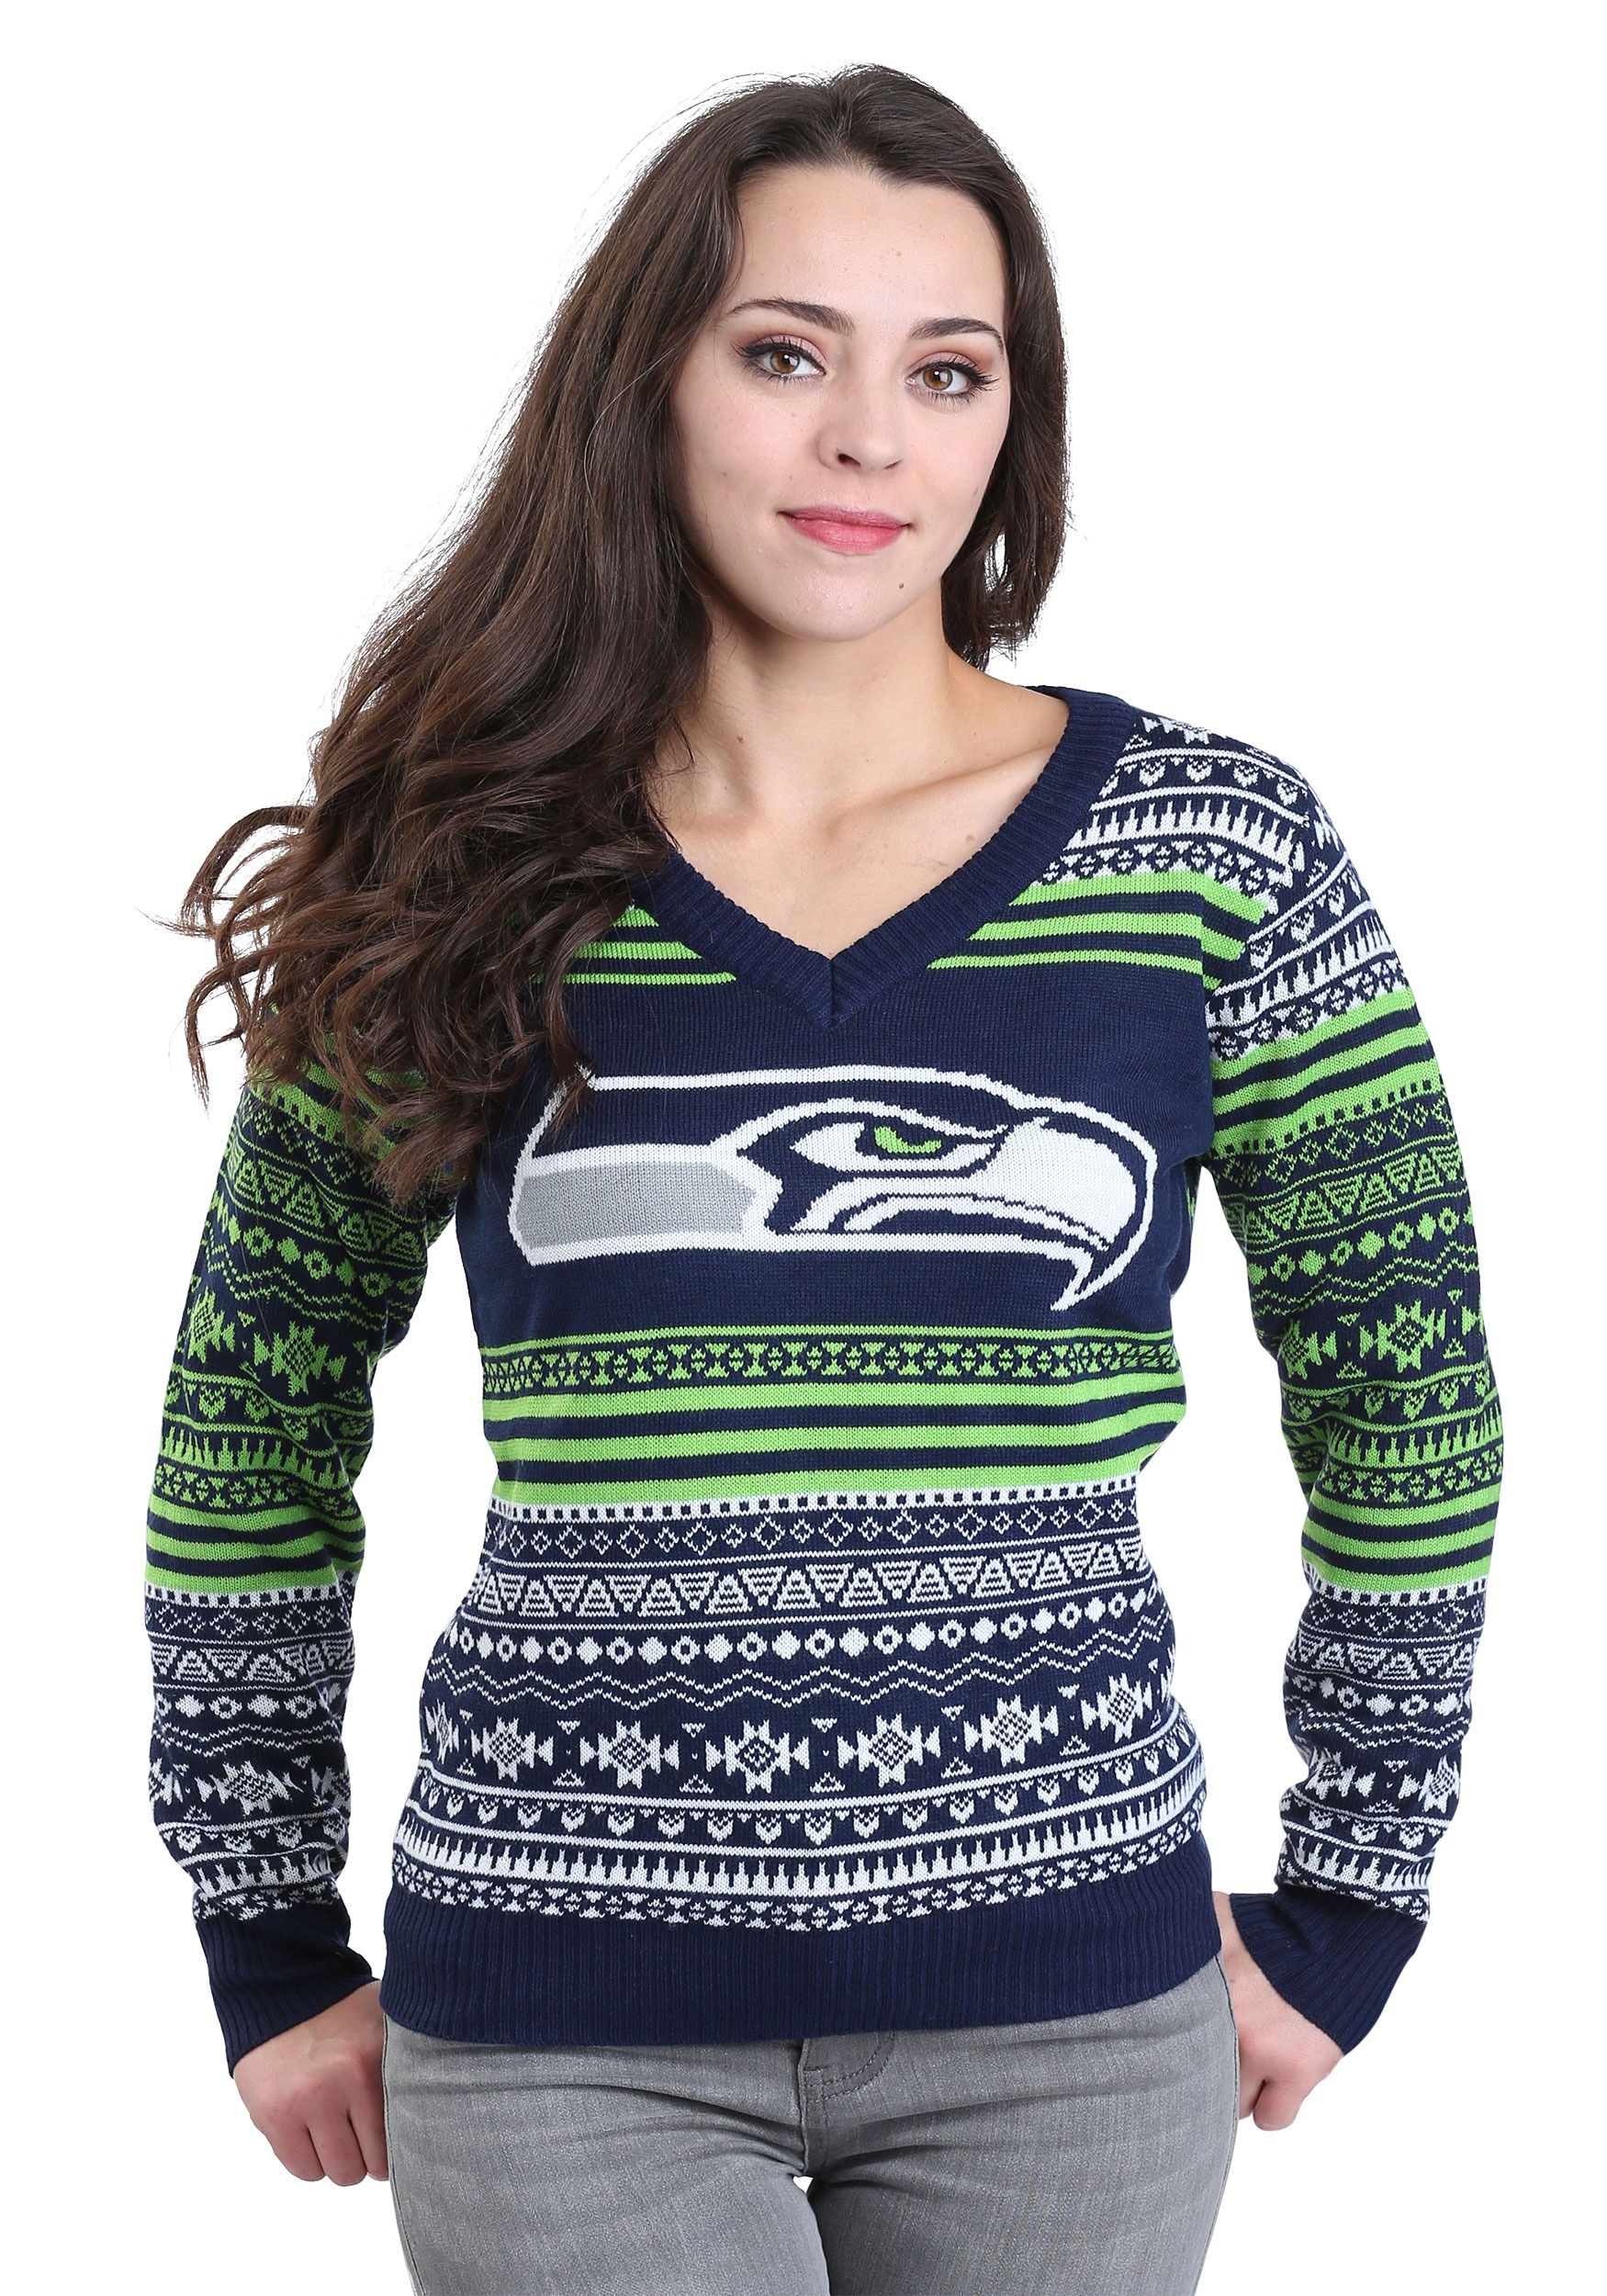 seattle seahawks sweater